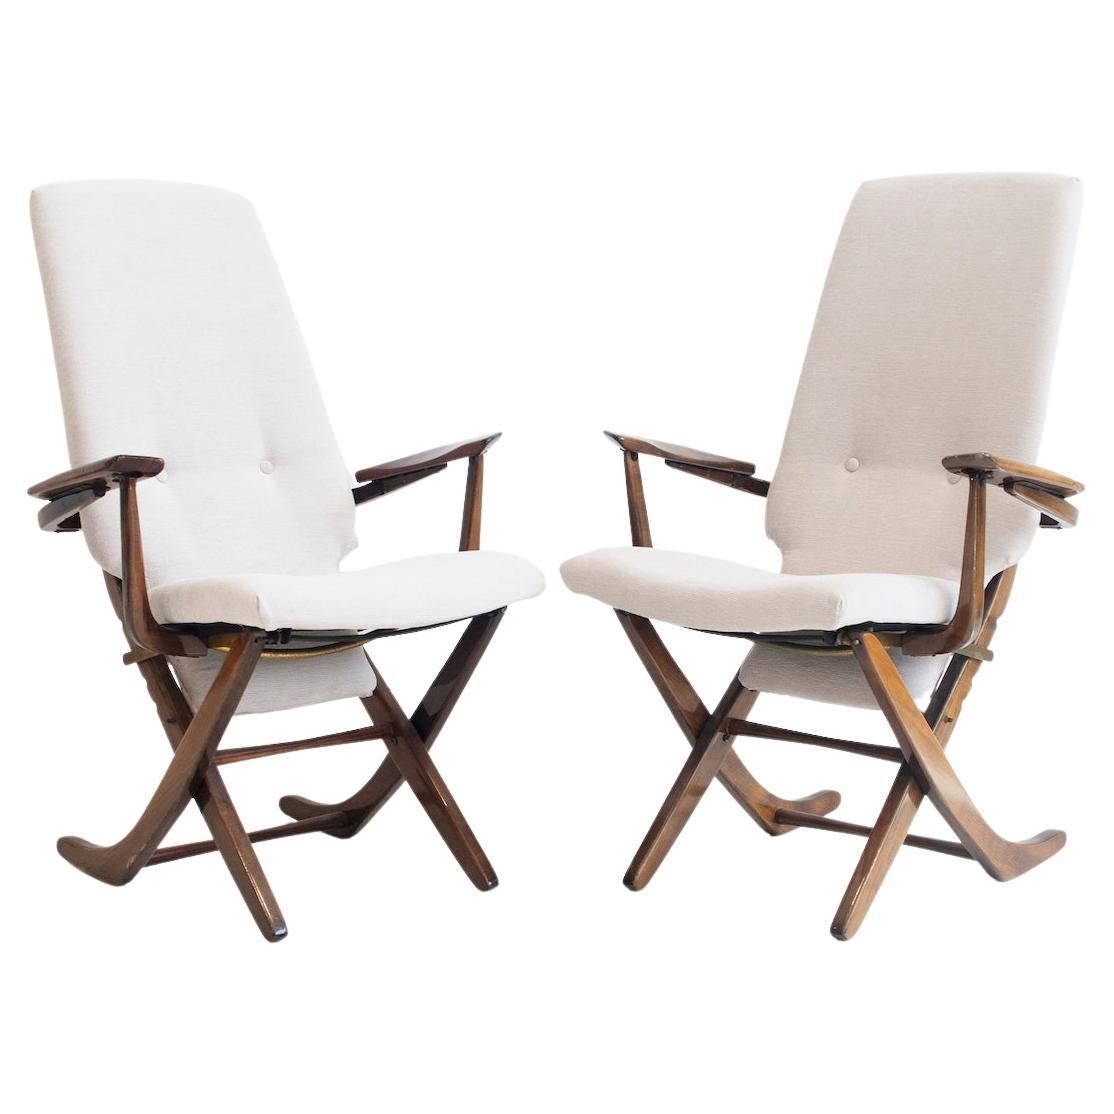 Paire de fauteuils de relaxation en bois verni, tapissés de tissu léger en vente